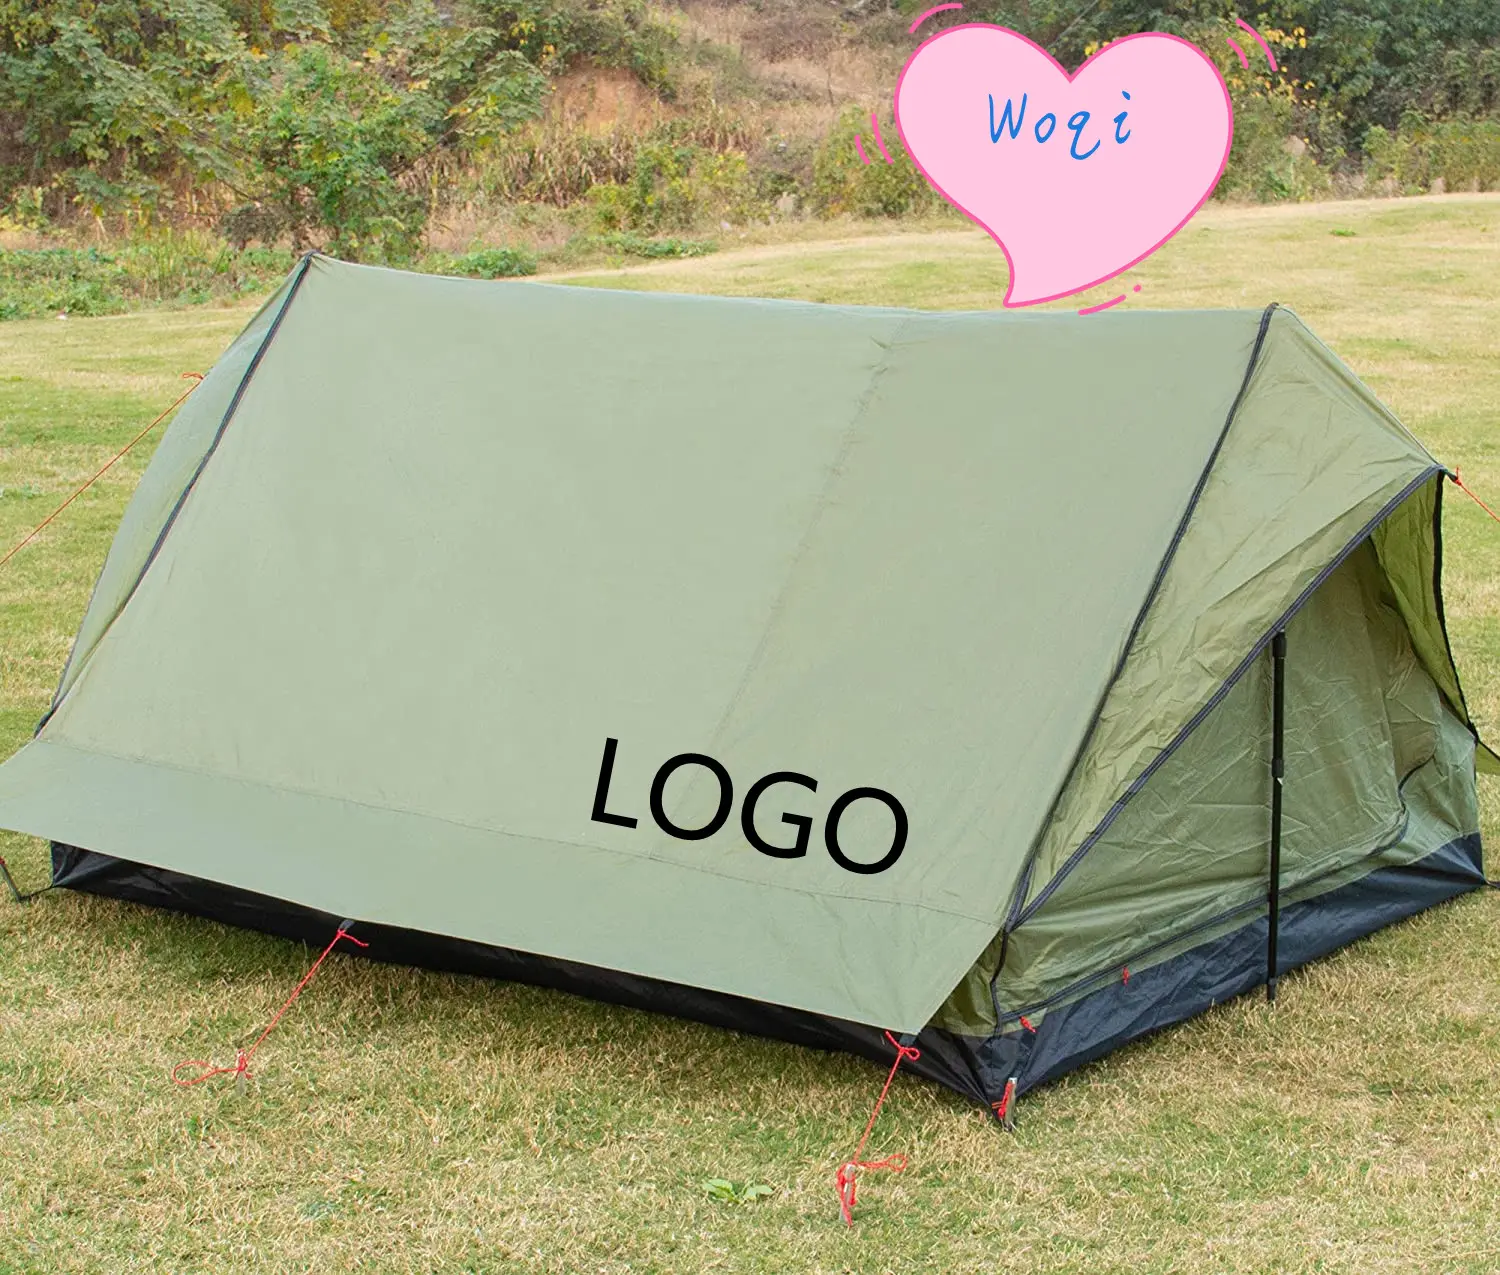 Woqi OEM Großhandel Innovationen Farbe angepasst Easy Setup Camping Outdoor Glamping Zelt